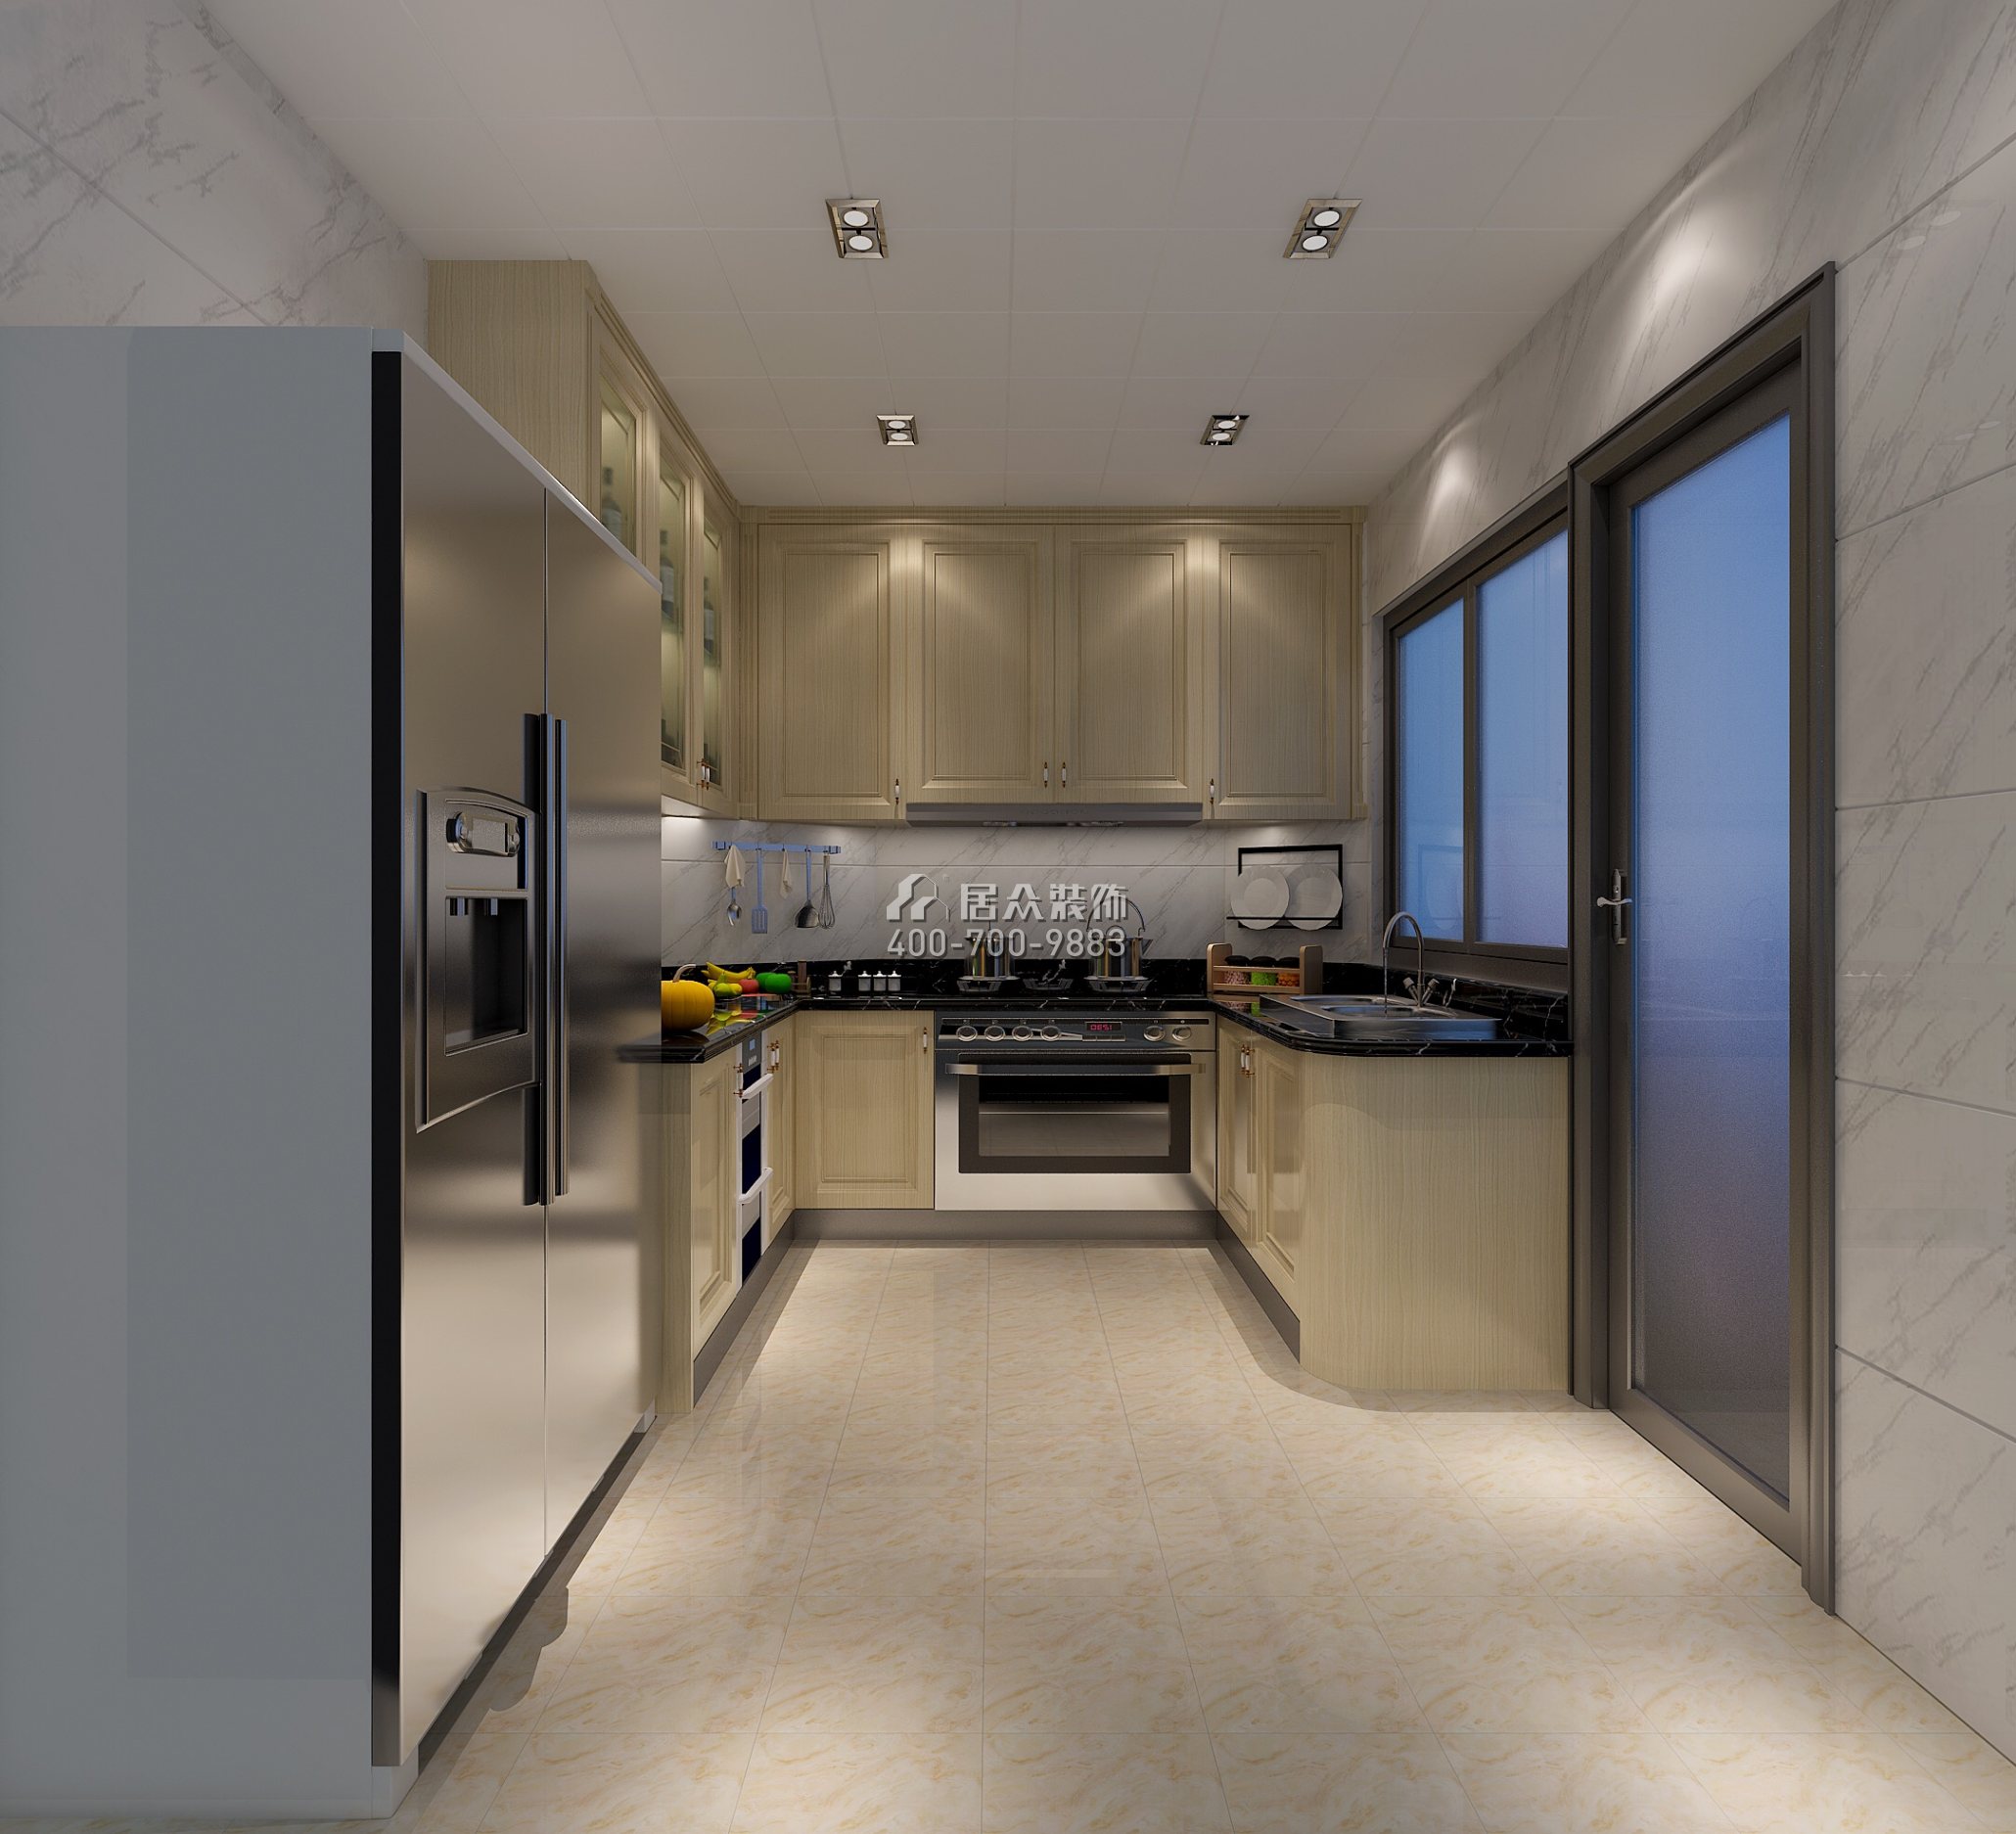 祈福天龙苑140平方米欧式风格平层户型厨房装修效果图